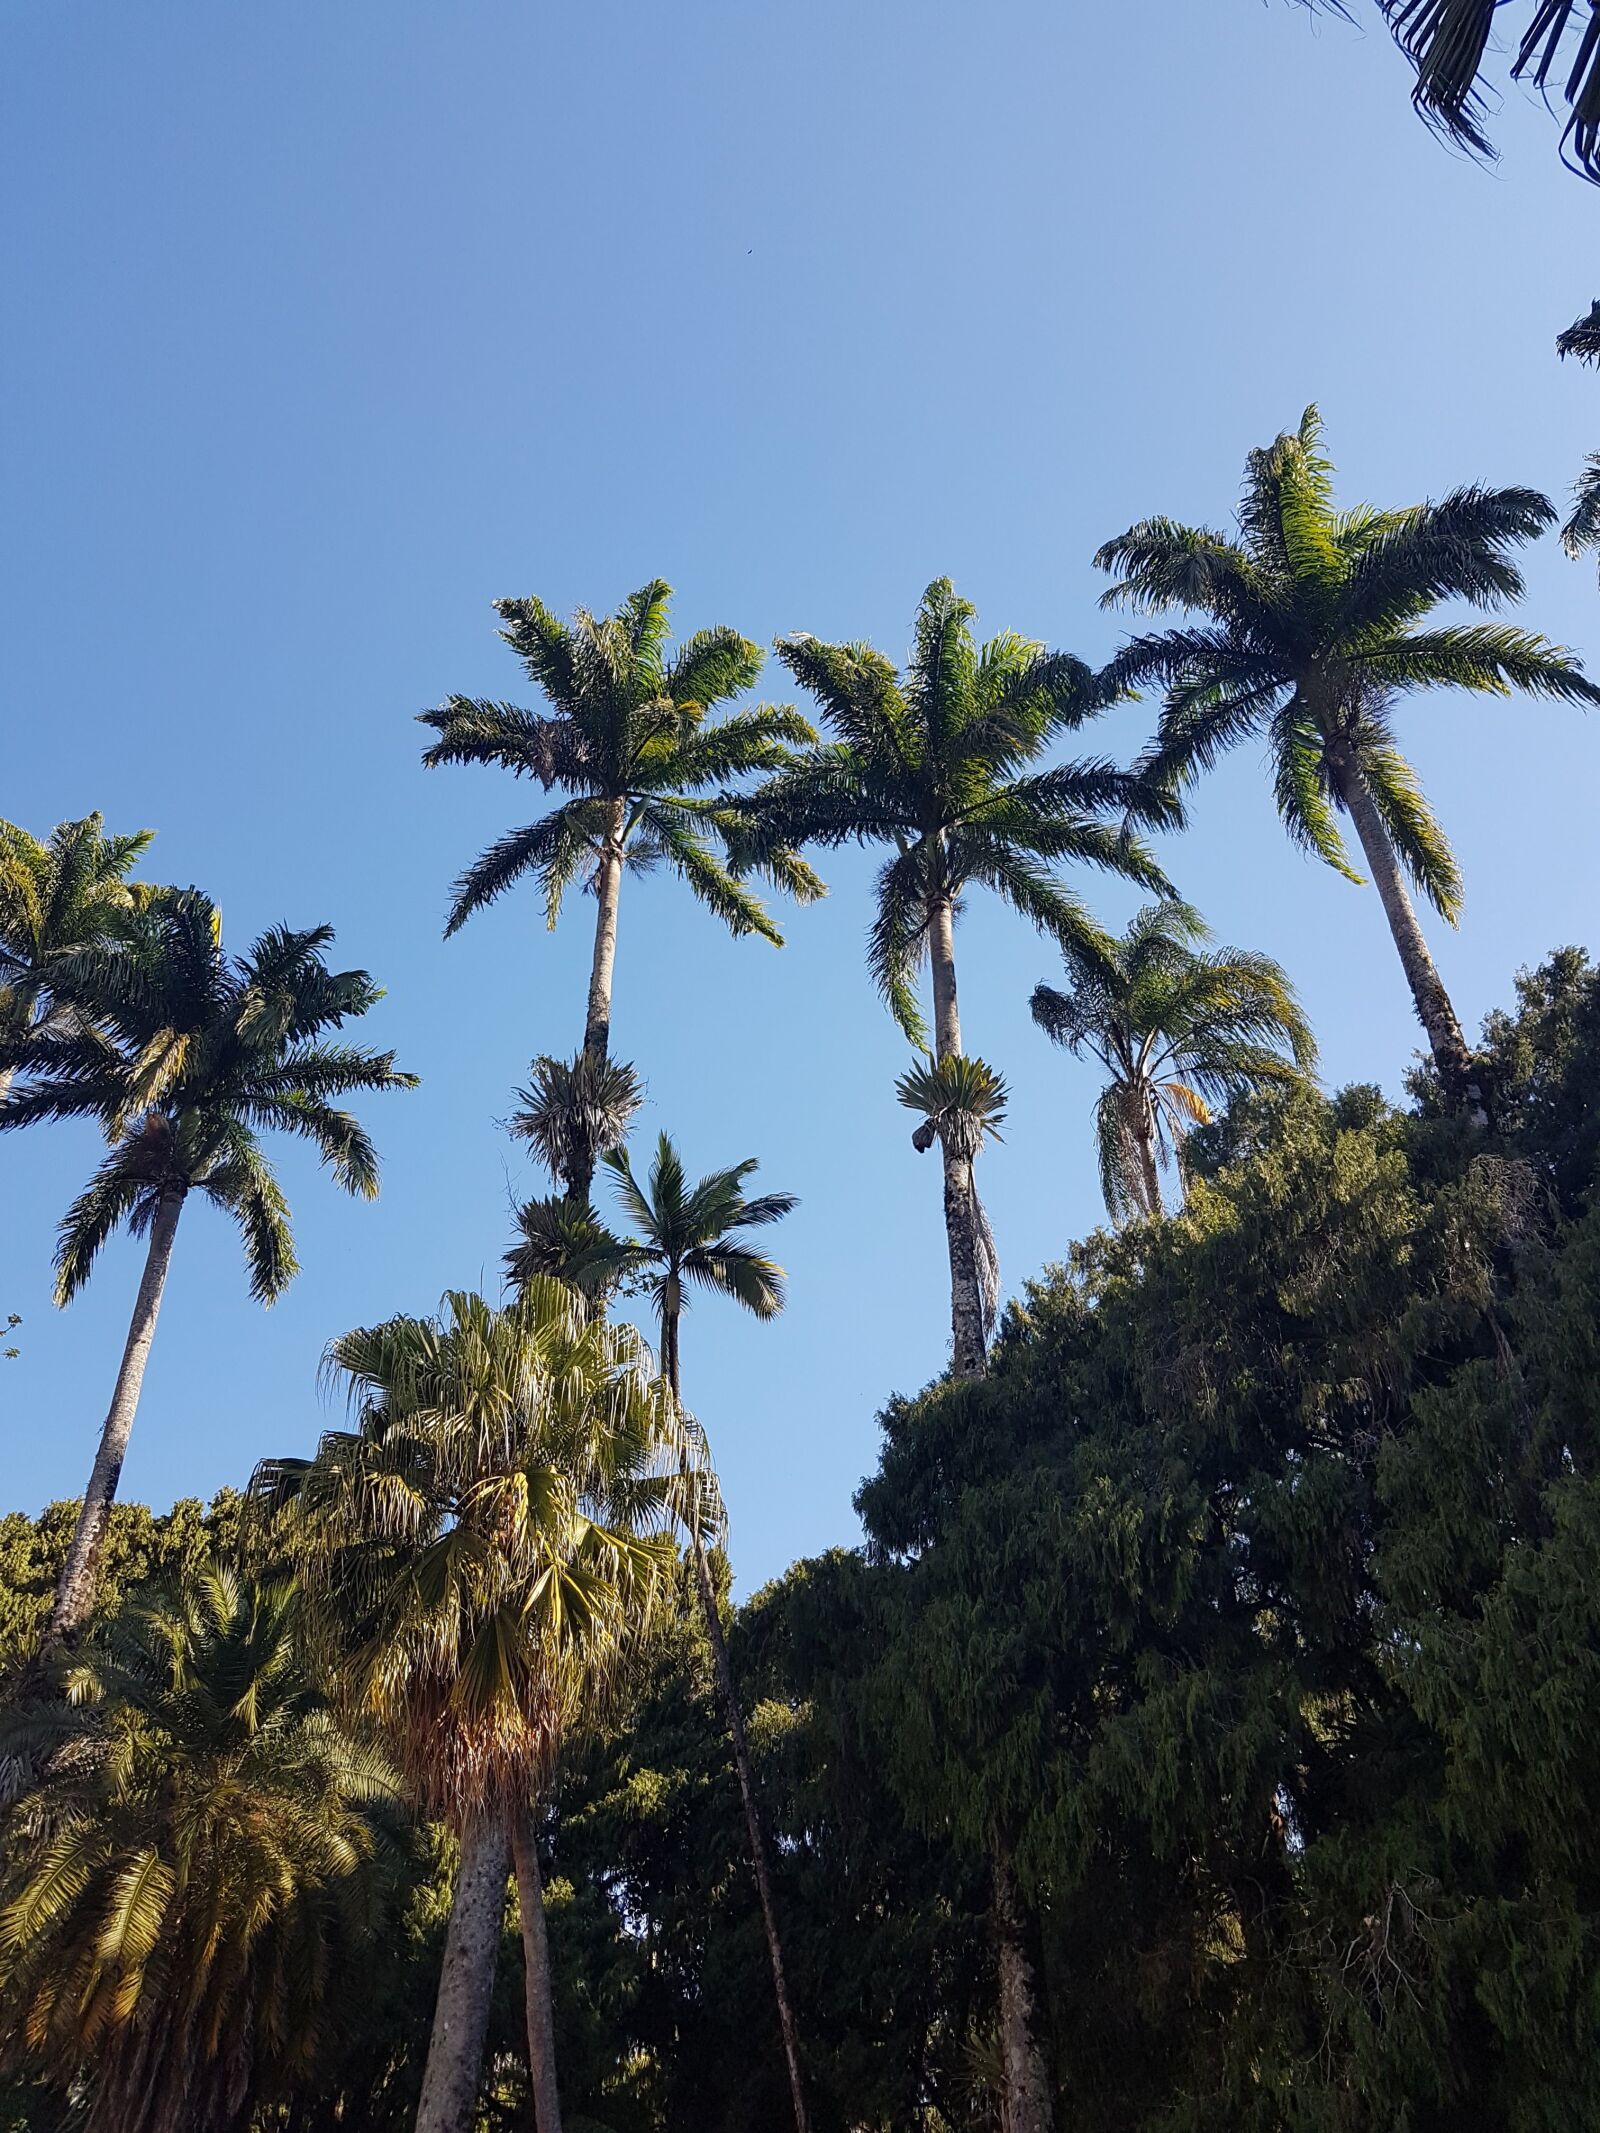 Samsung Galaxy S7 sample photo. Coconut tree, sky, tree photography